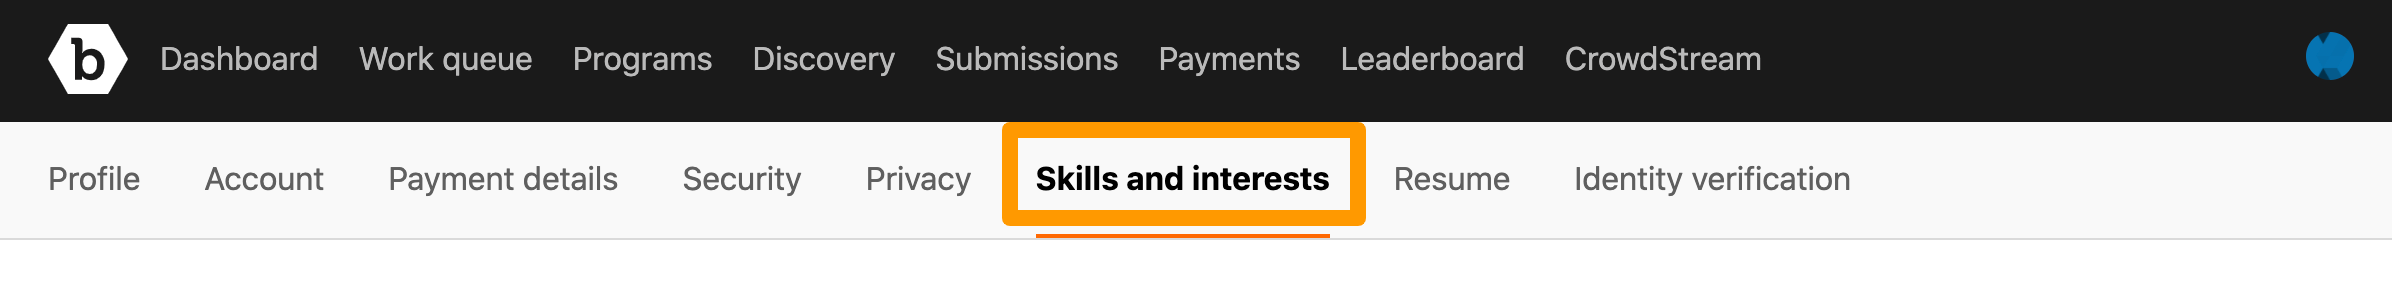 skills-interests-tab